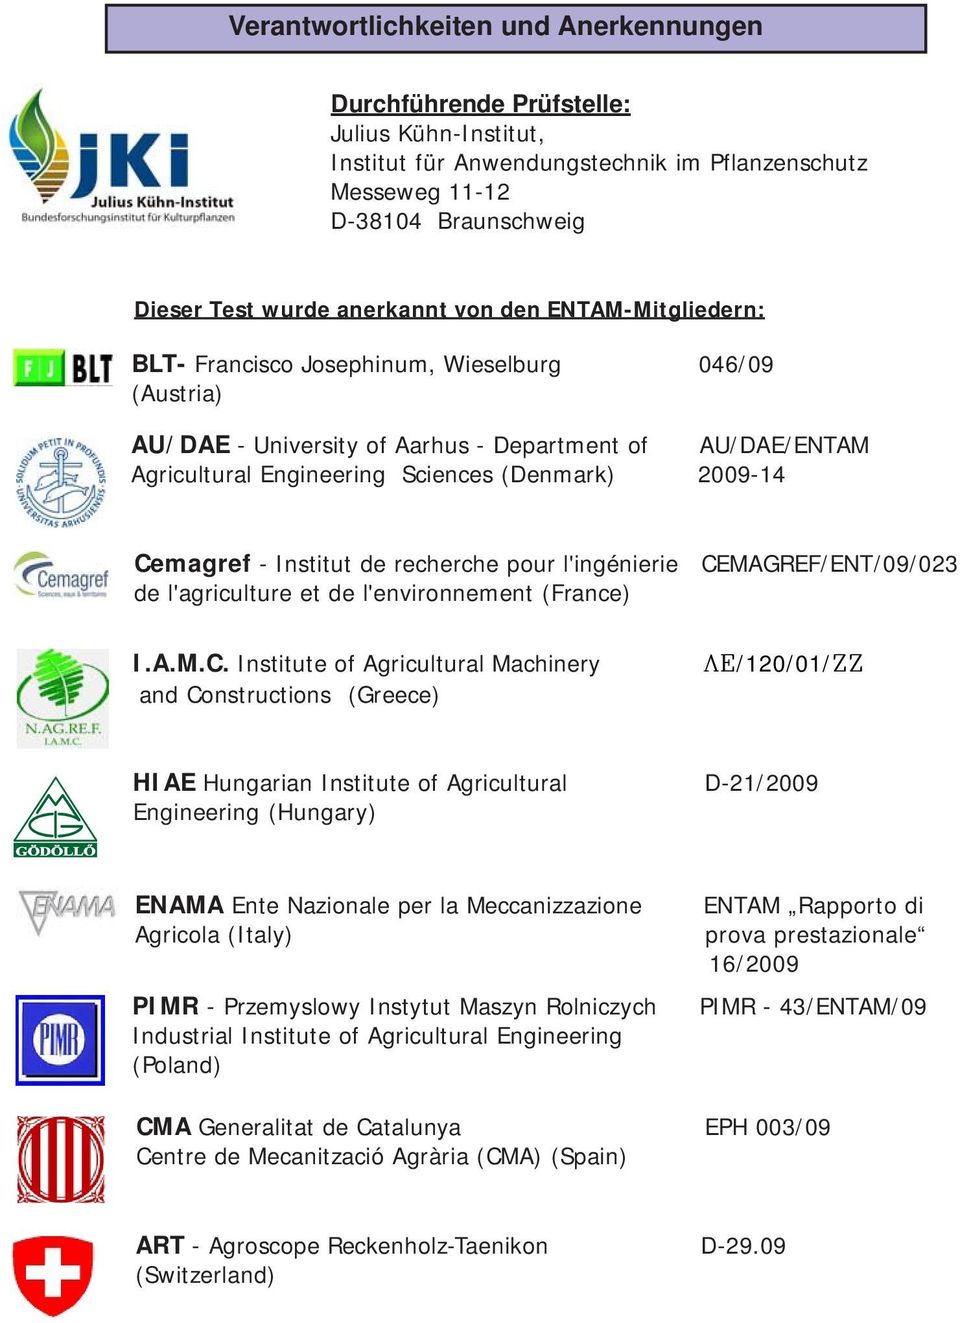 Cemagref - Institut de recherche pour l'ingénierie CEMAGREF/ENT/09/023 de l'agriculture et de l'environnement (France) I.A.M.C. Institute of Agricultural Machinery and Constructions (Greece)